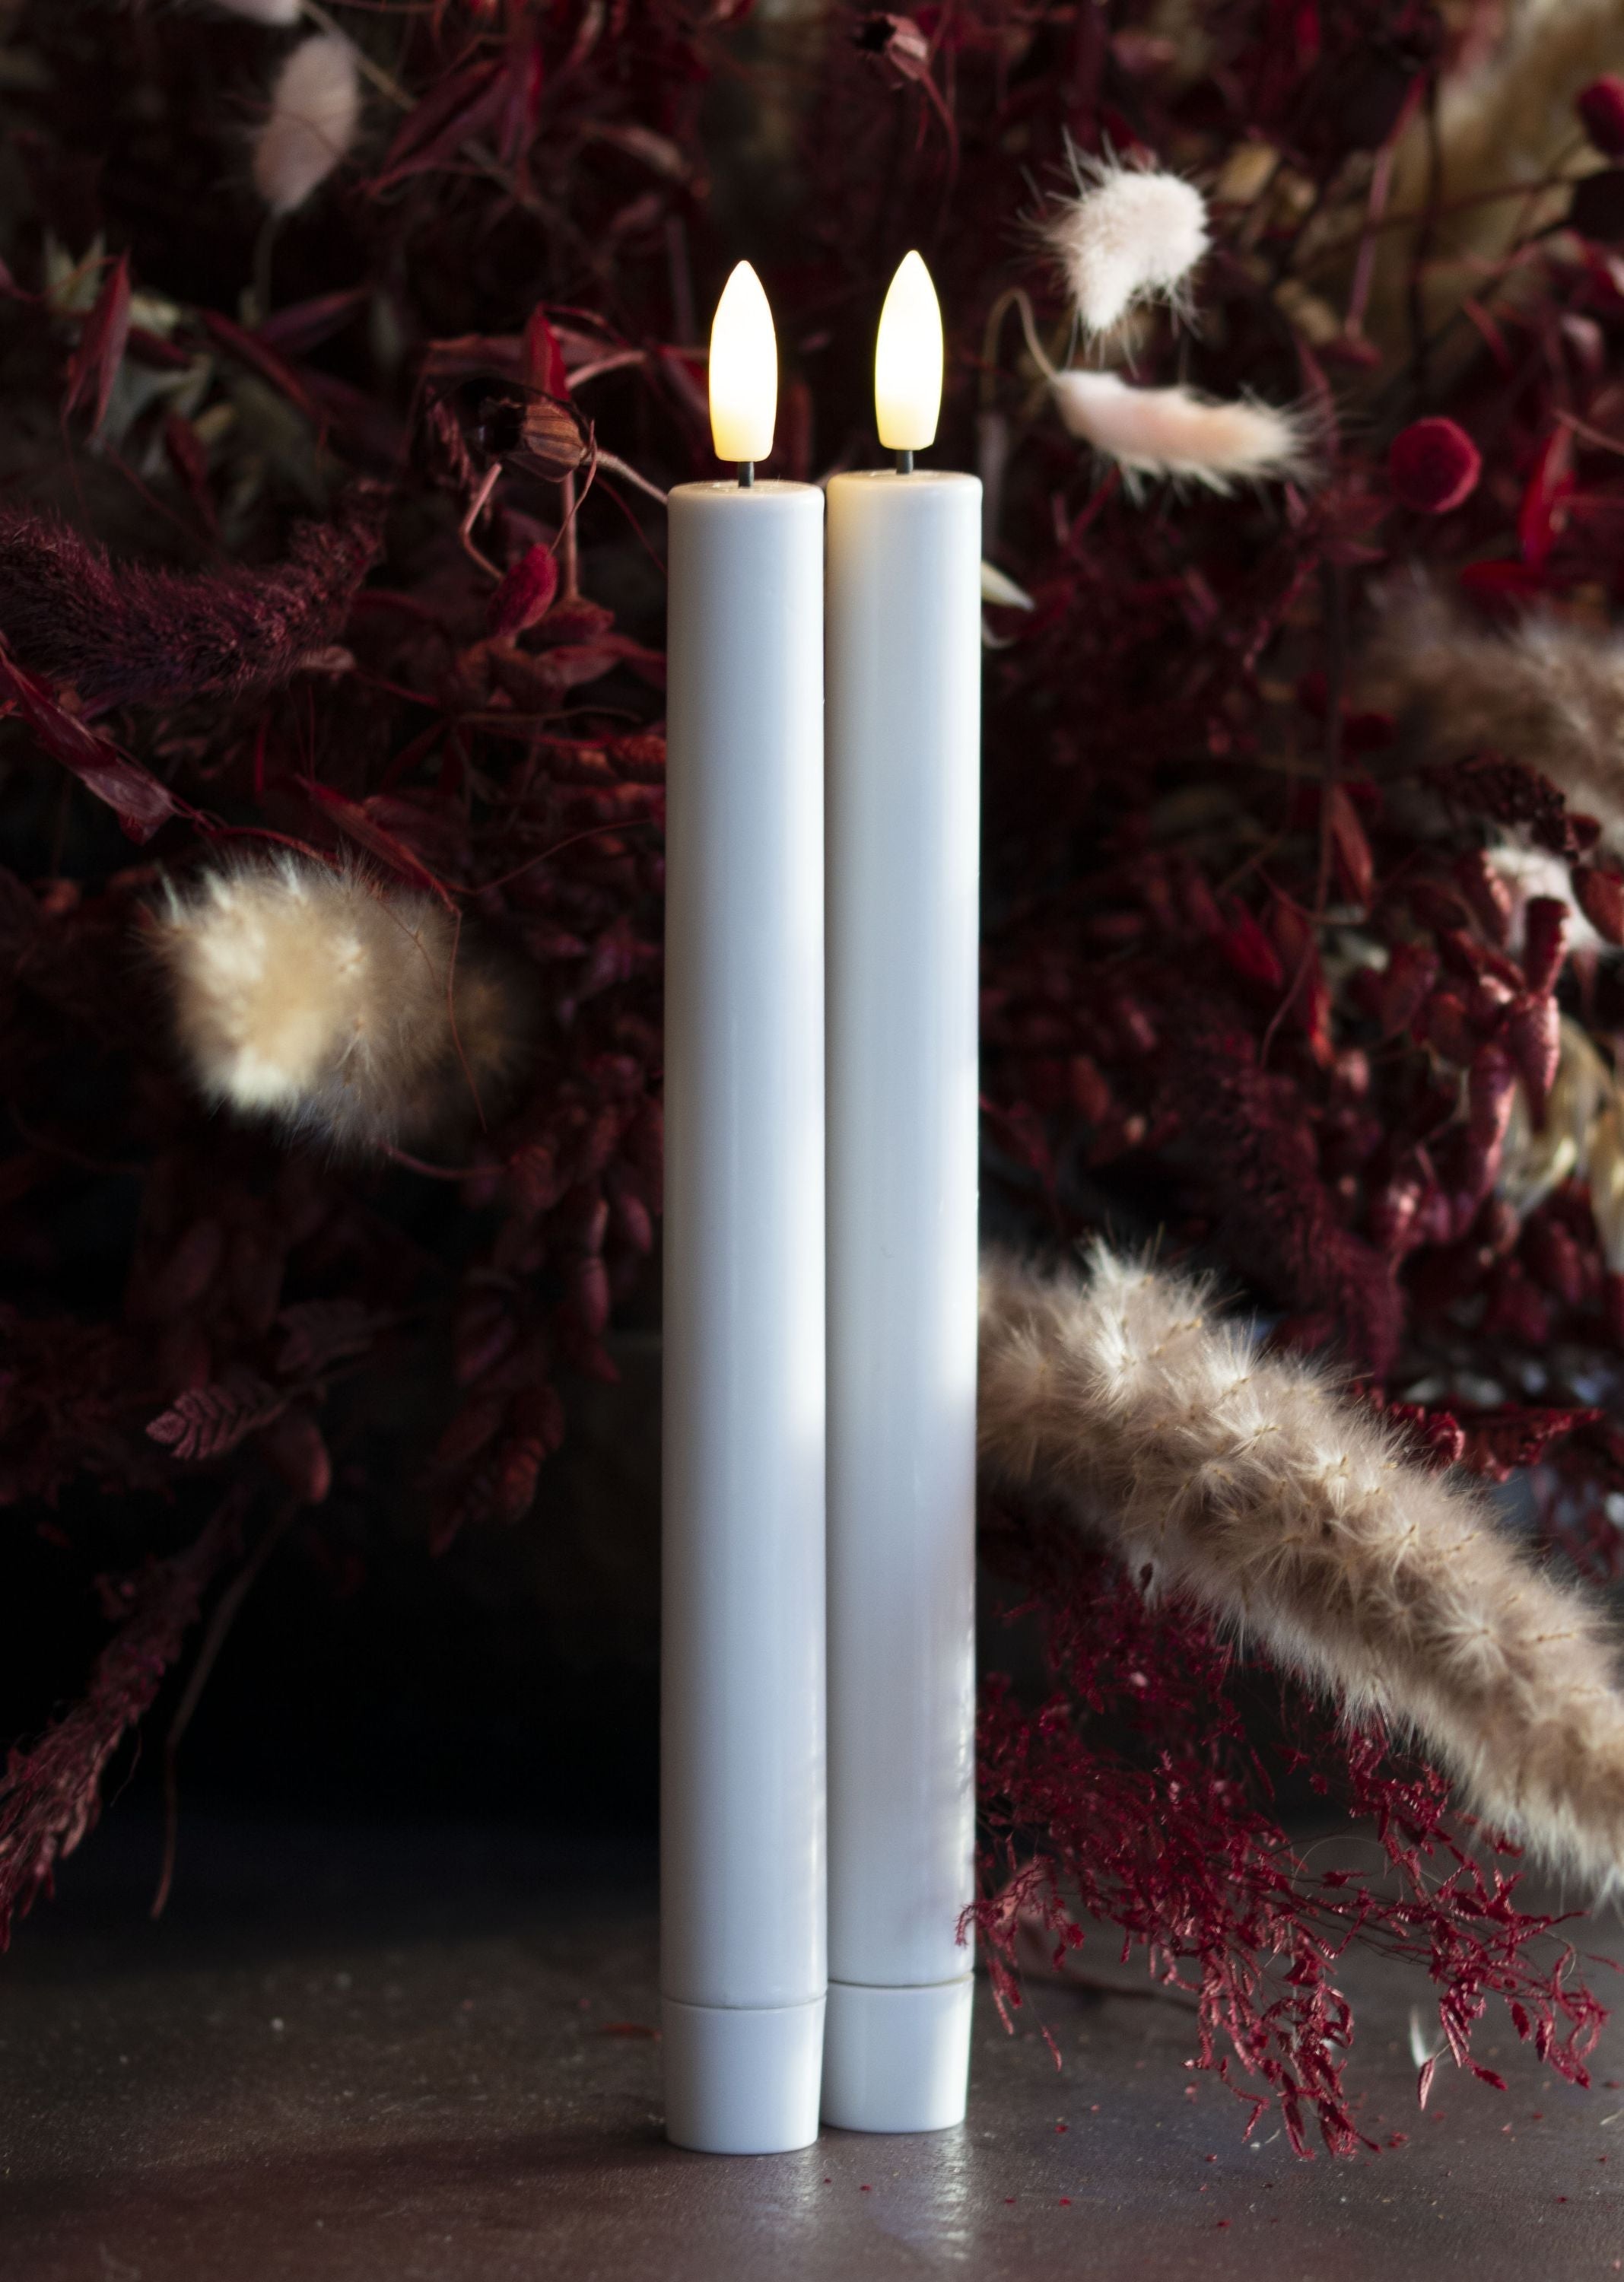 Sirius Sille genopladelig krone LED -lys 2 stk. Hvid ØX H 2,2x25 cm